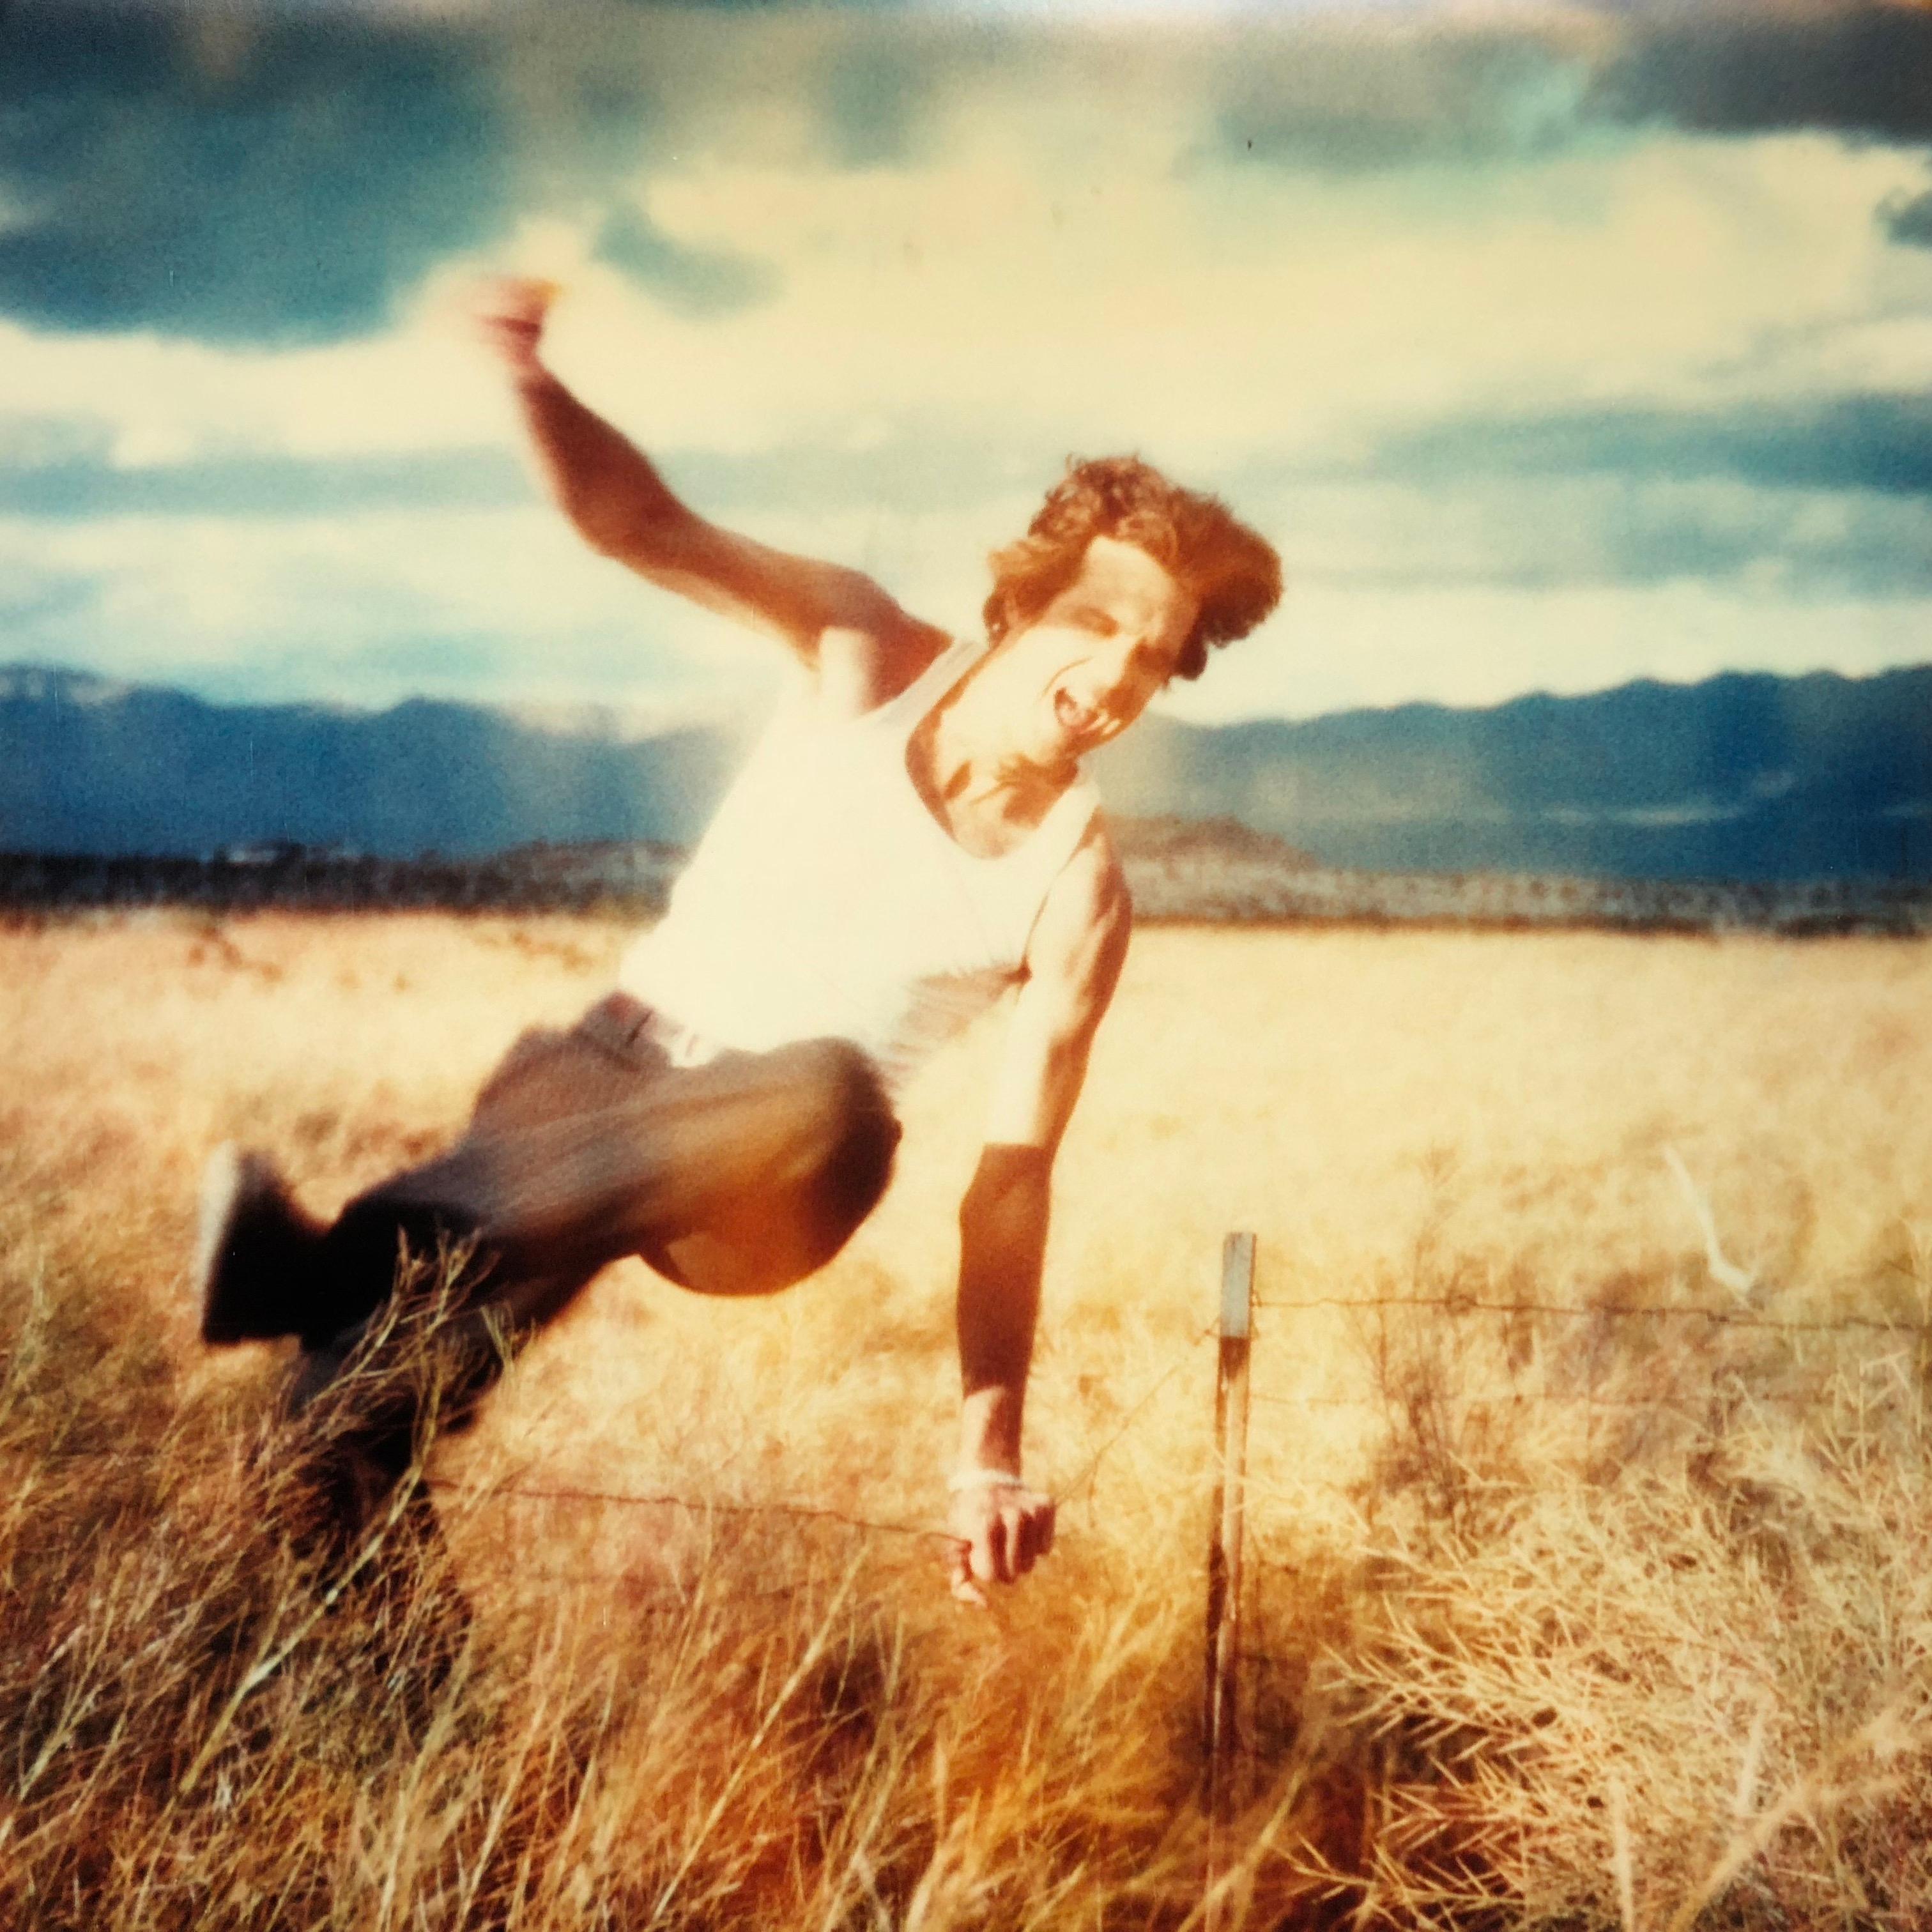 Field of Dreams (Sidewinder), analog- Polaroid, Contemporary, 21st Century - Photograph by Stefanie Schneider